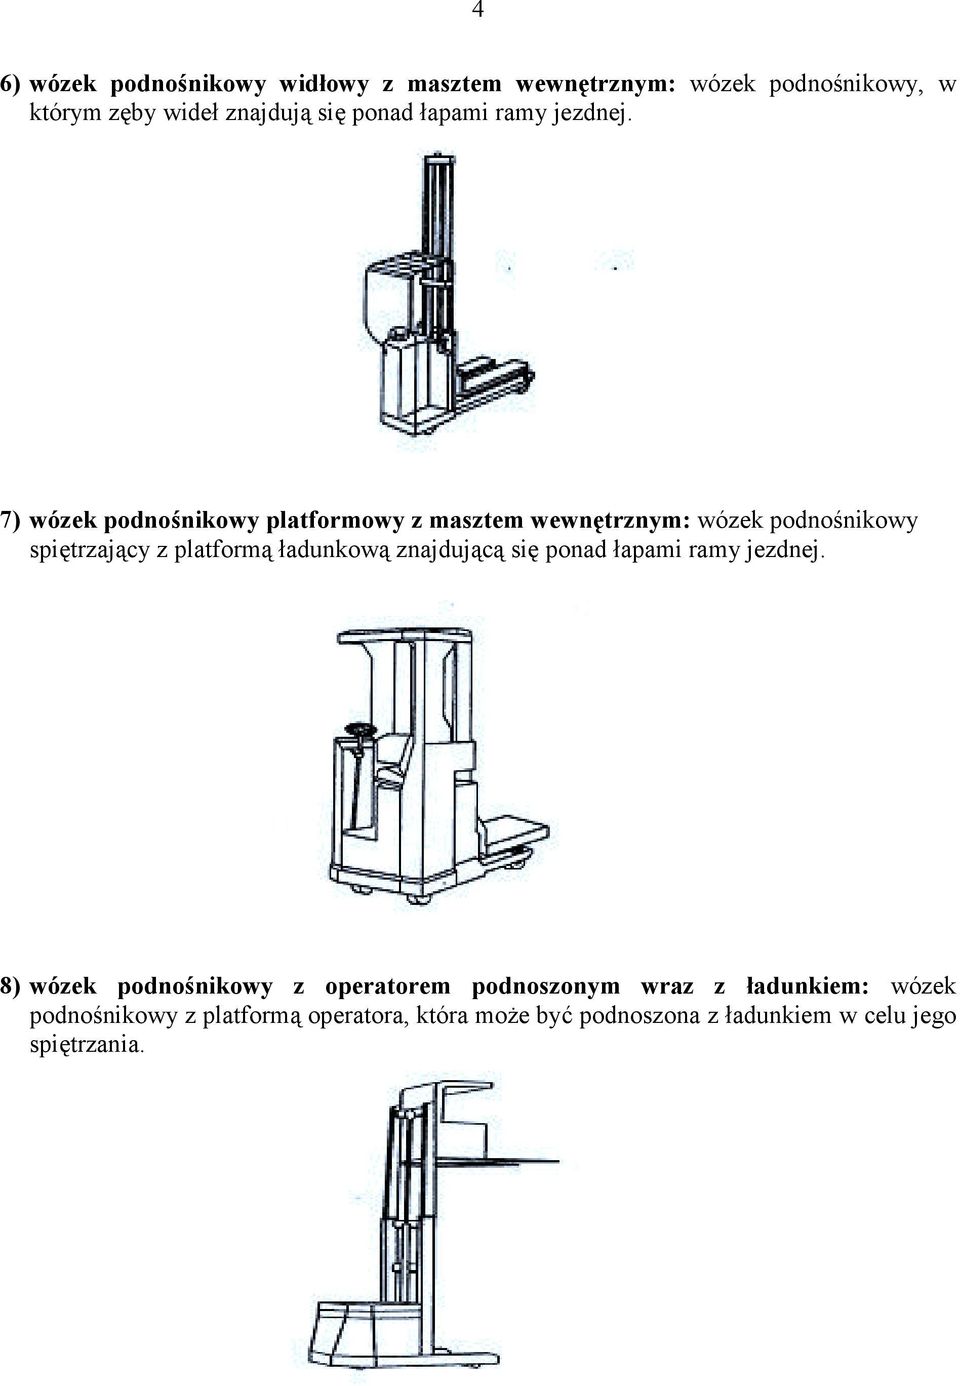 7) wózek podnośnikowy platformowy z masztem wewnętrznym: wózek podnośnikowy spiętrzający z platformą ładunkową